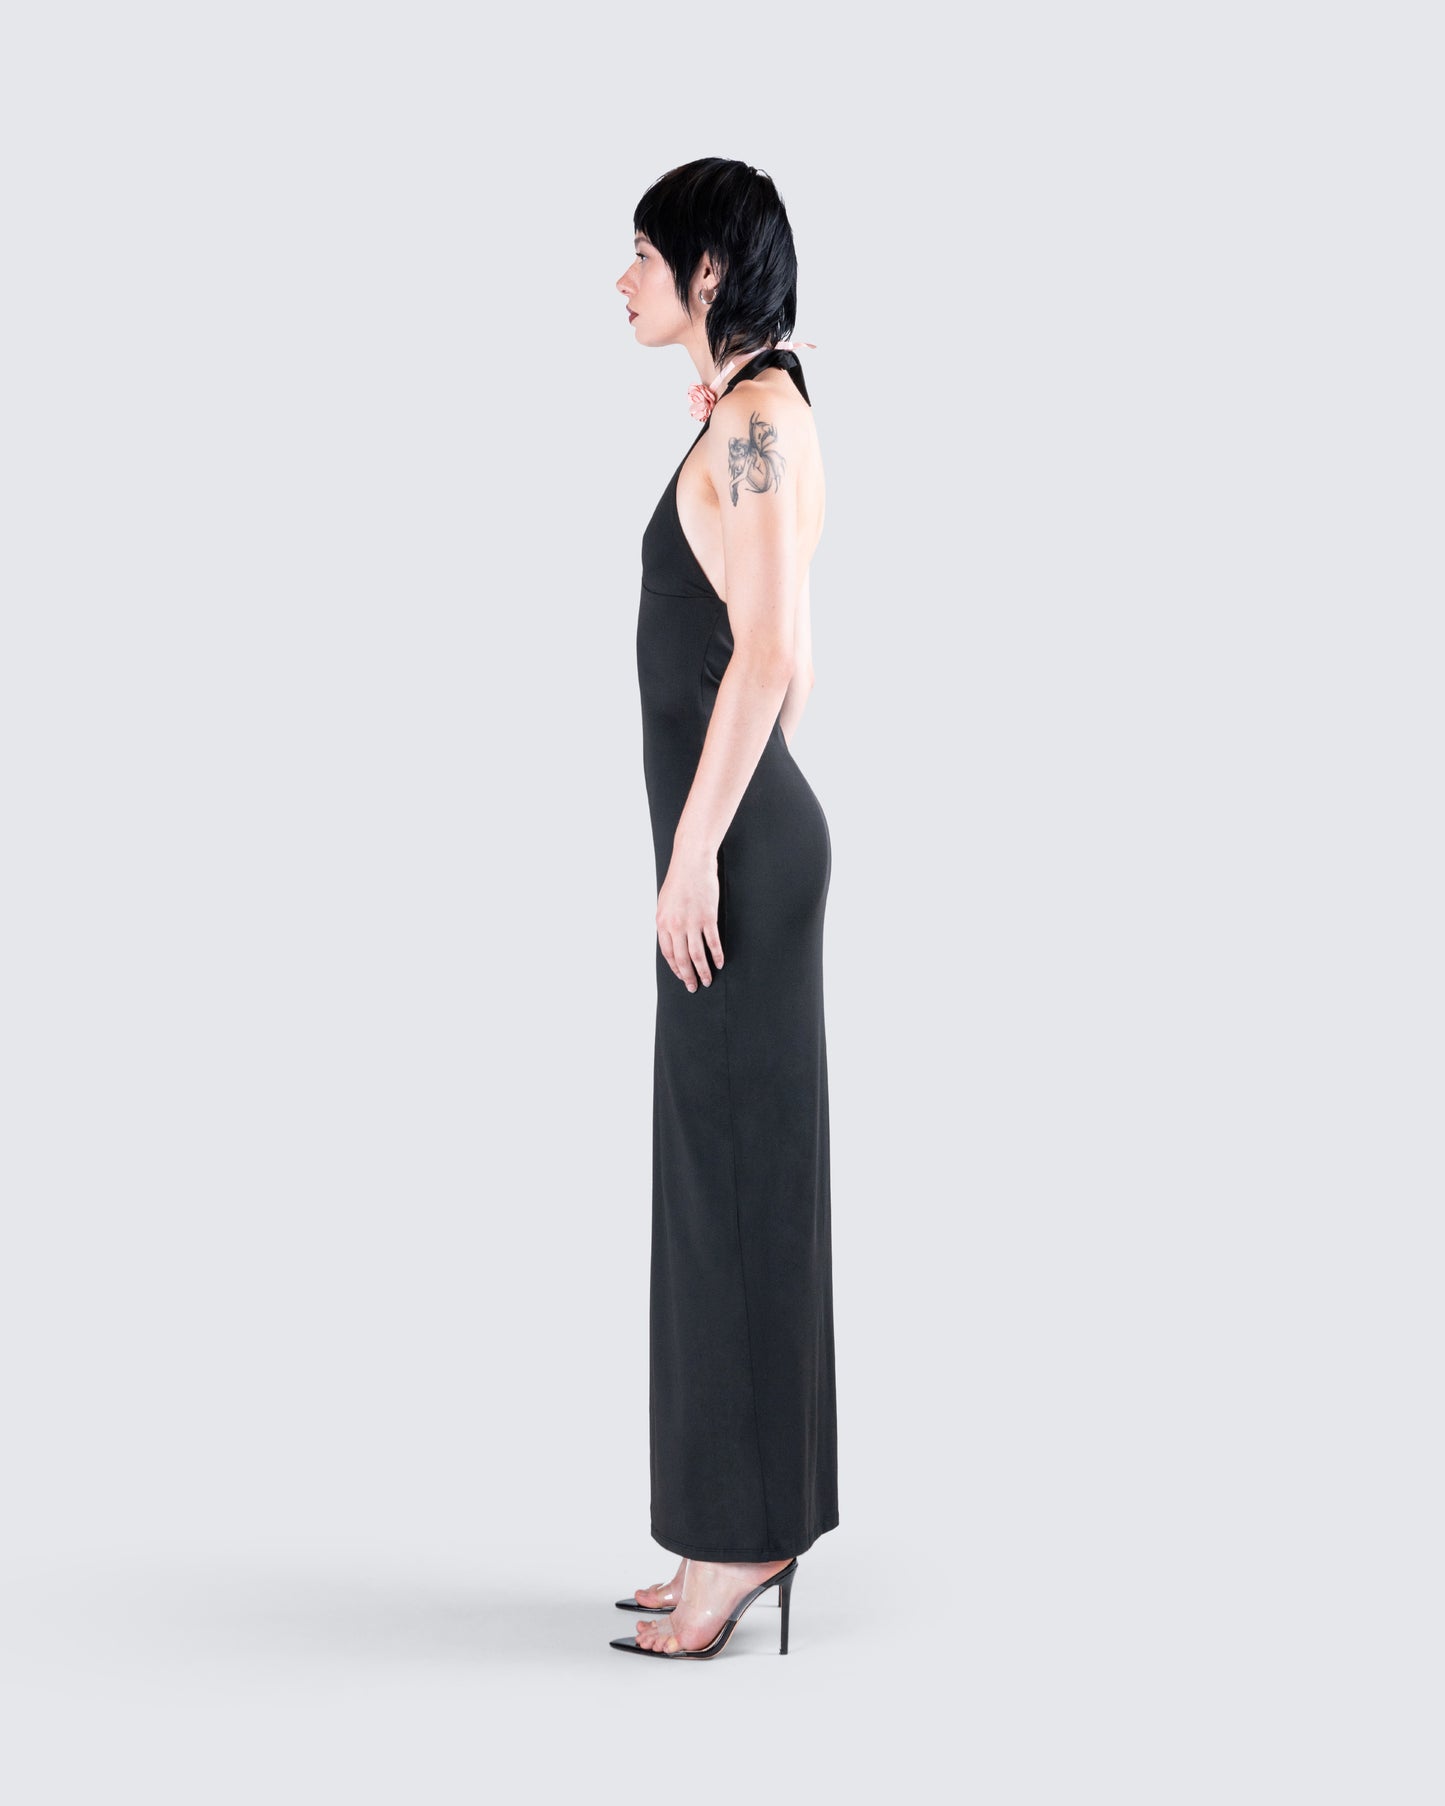 Kiari Black Halter Maxi Dress